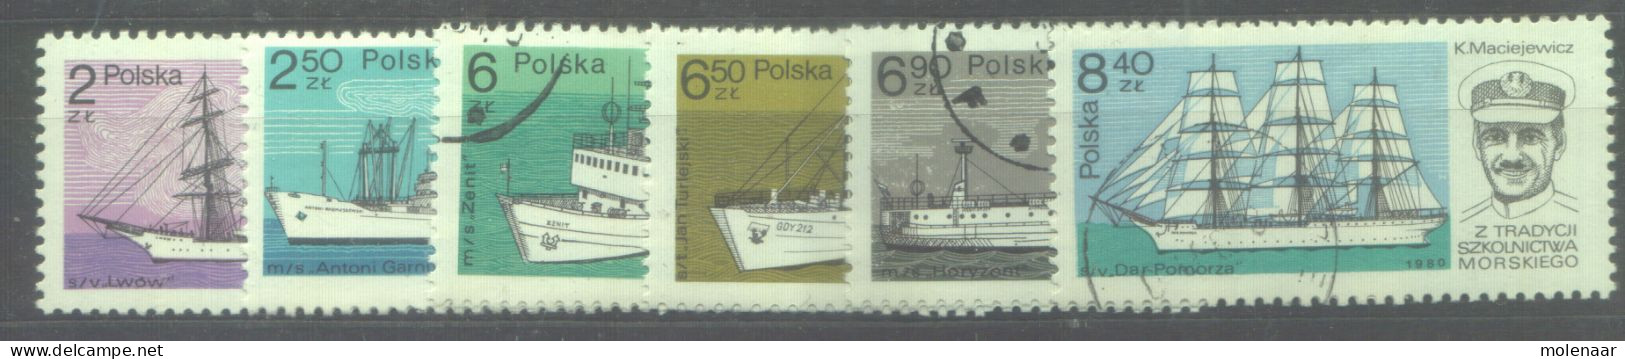 Postzegels > Europa > Polen > 1944-.... Republiek > 1981-90 > Gebruikt 2701-2706 (12187) - Usados